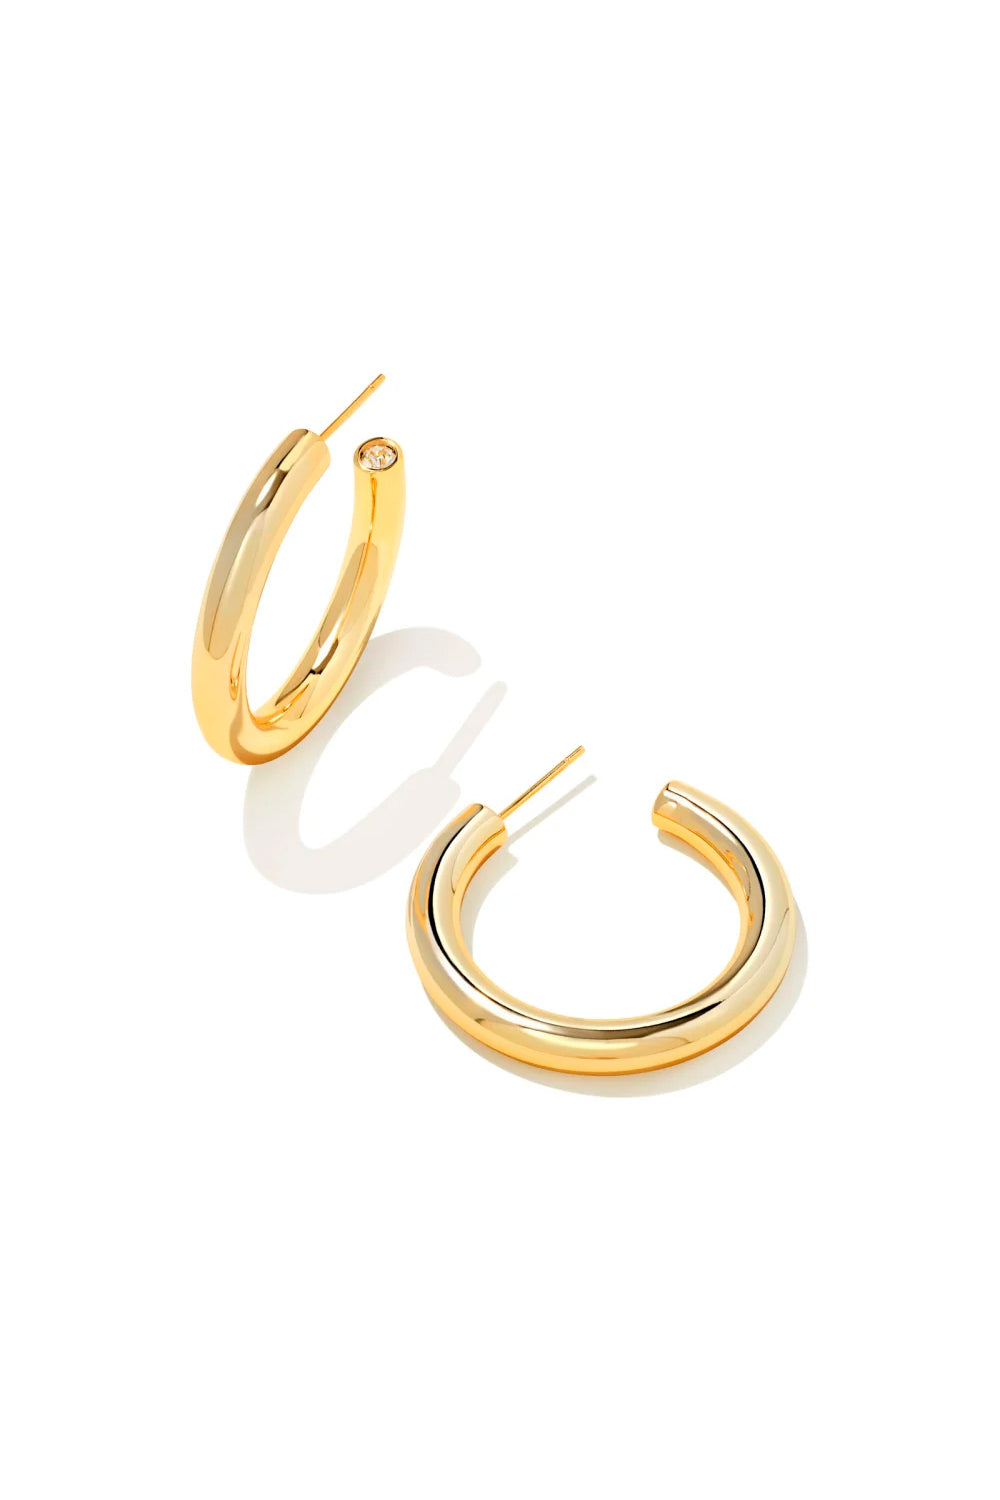 Kendra Scott: Colette Hoop Earrings - Gold | Makk Fashions